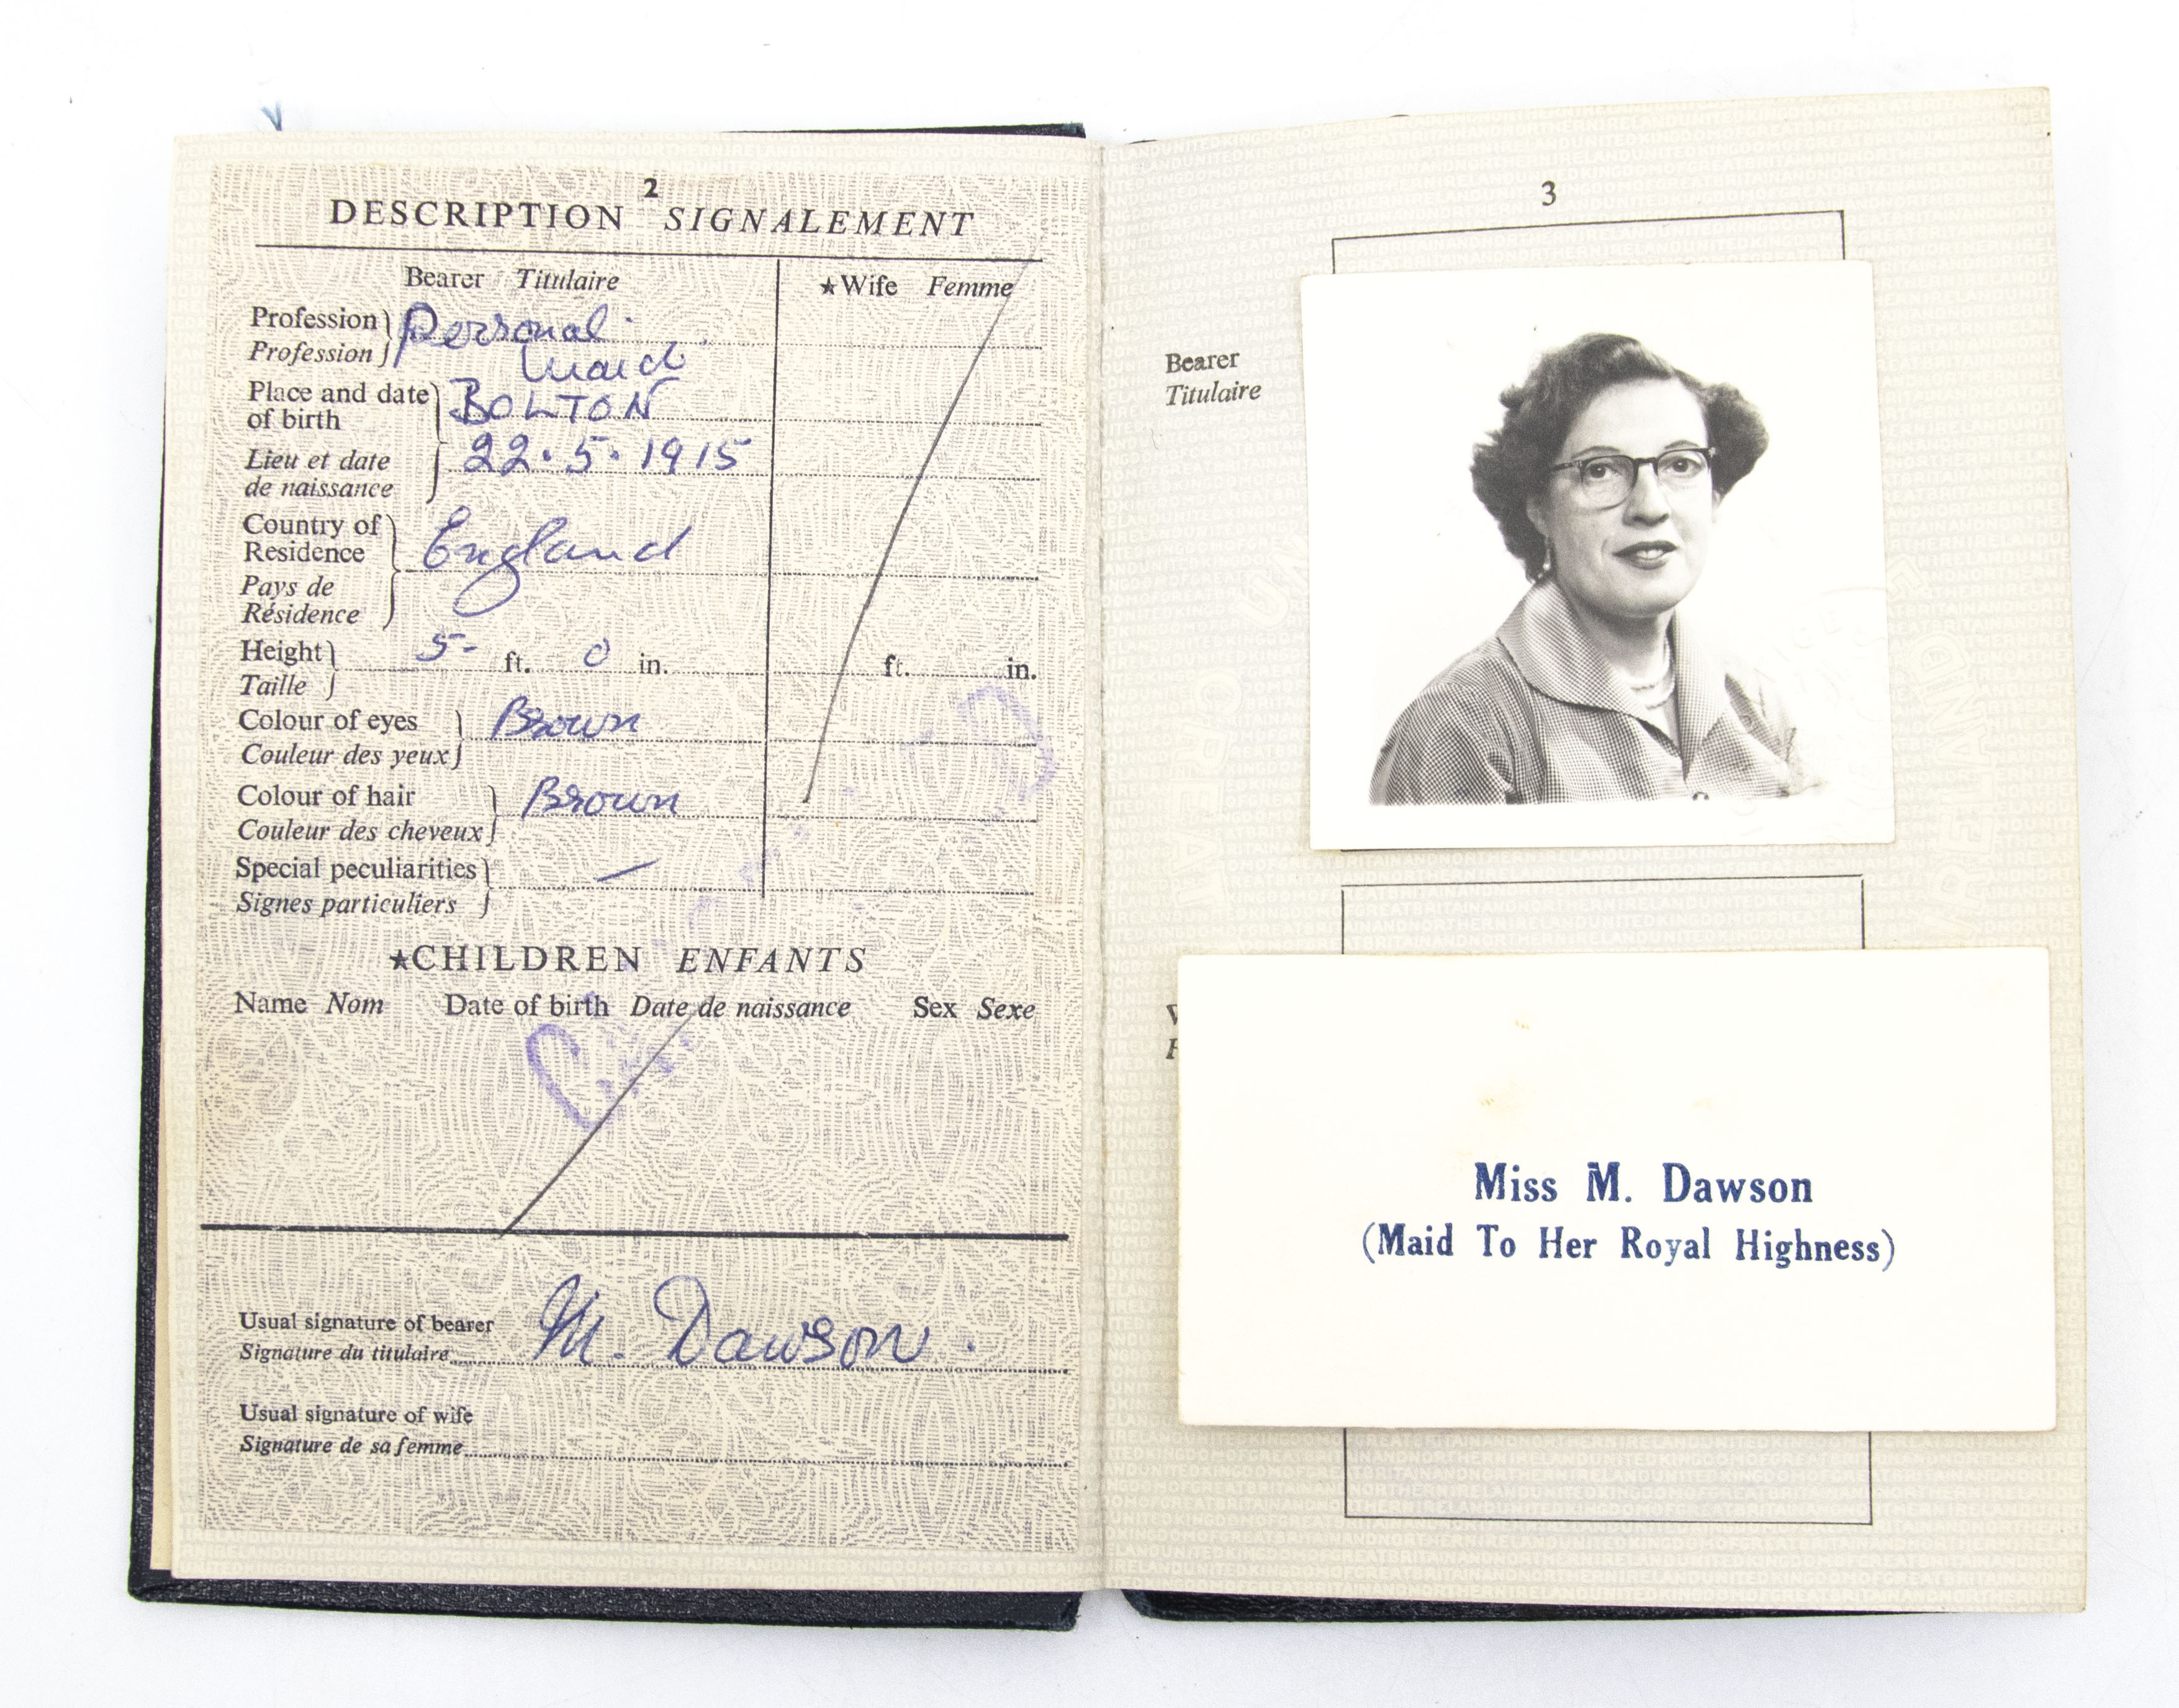 Marjorie Dawson's passport